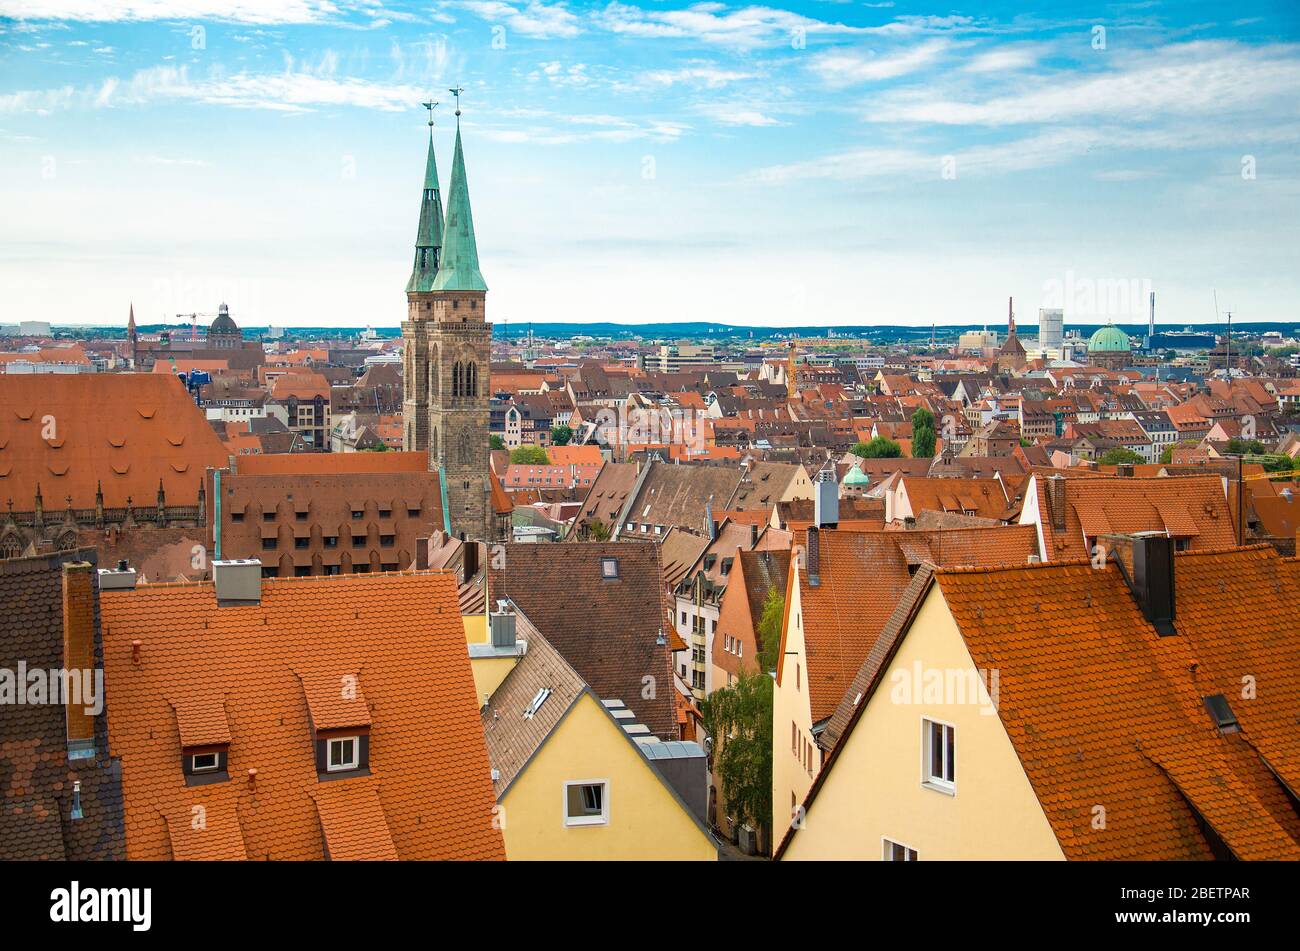 Vue panoramique sur les toits de la vieille ville historique de Nuremberg Nurnberg, région de Mittelfranken, Bavière, Allemagne Banque D'Images